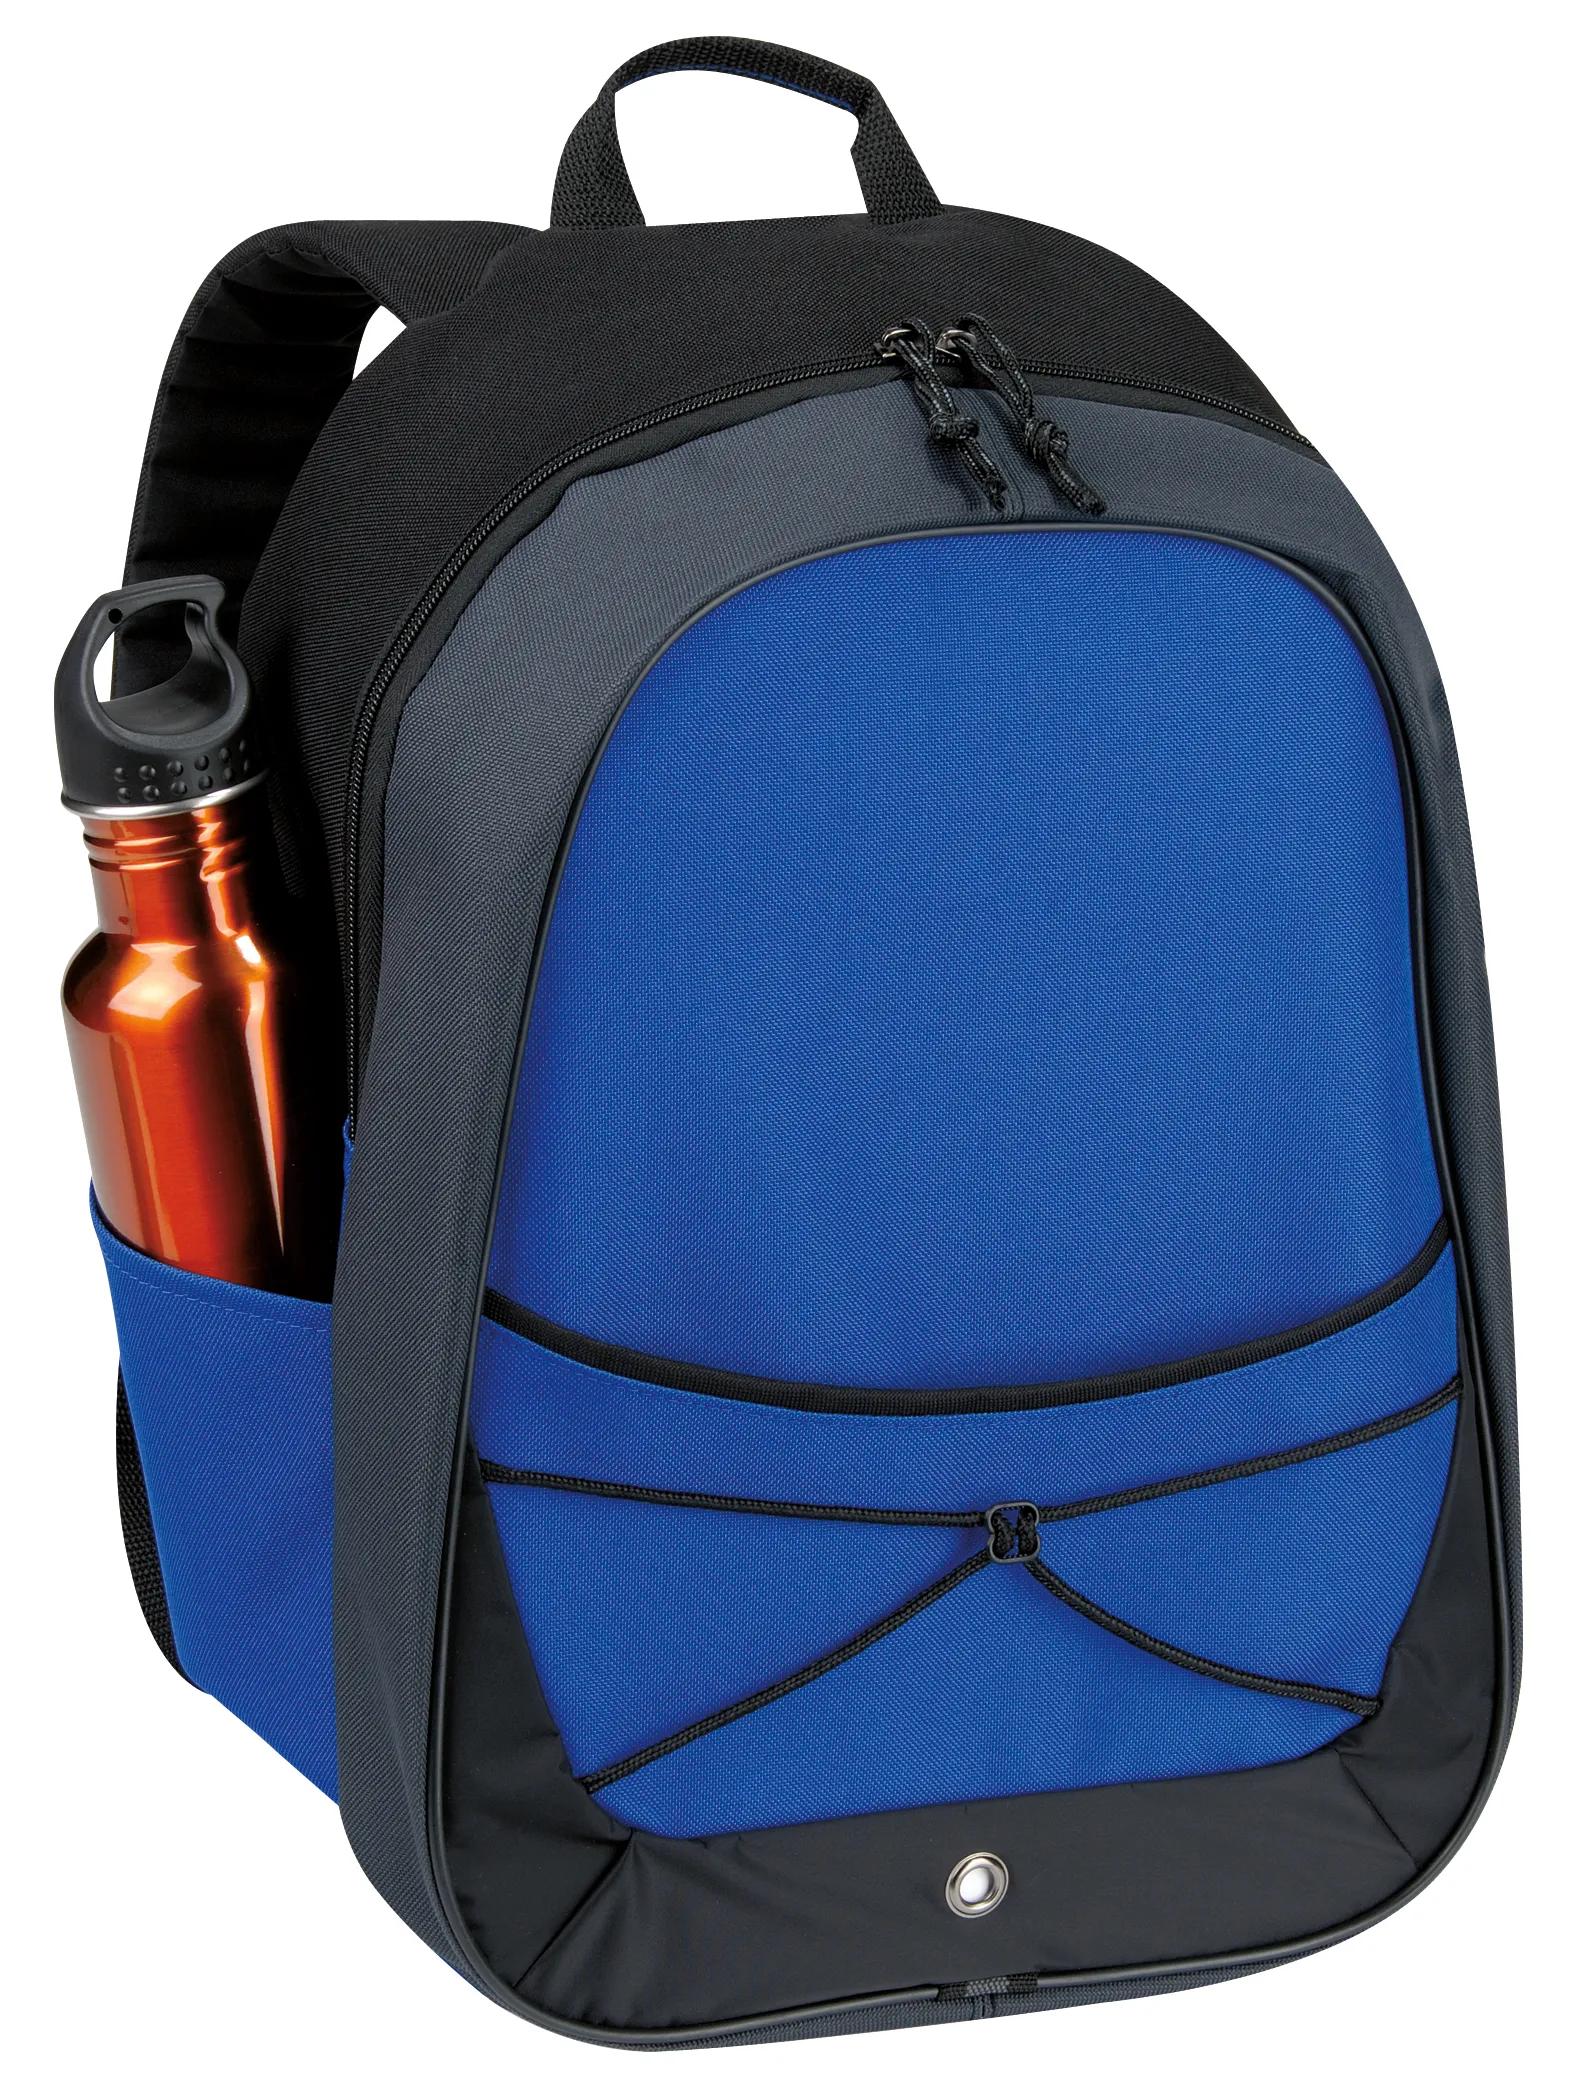 Tri-Tone Sport Backpack 4 of 8